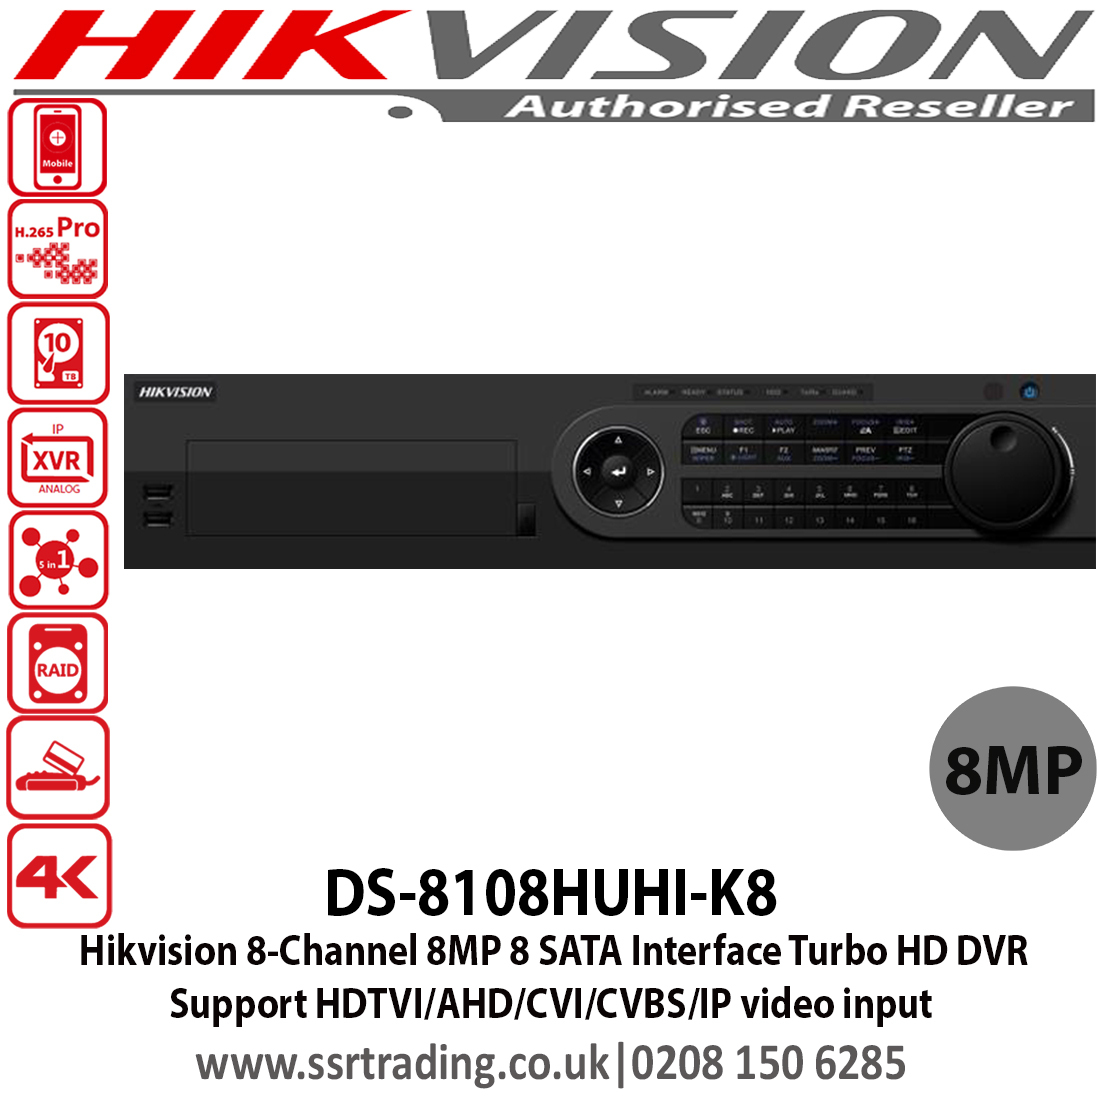 hikvision dvr firmware upgrade